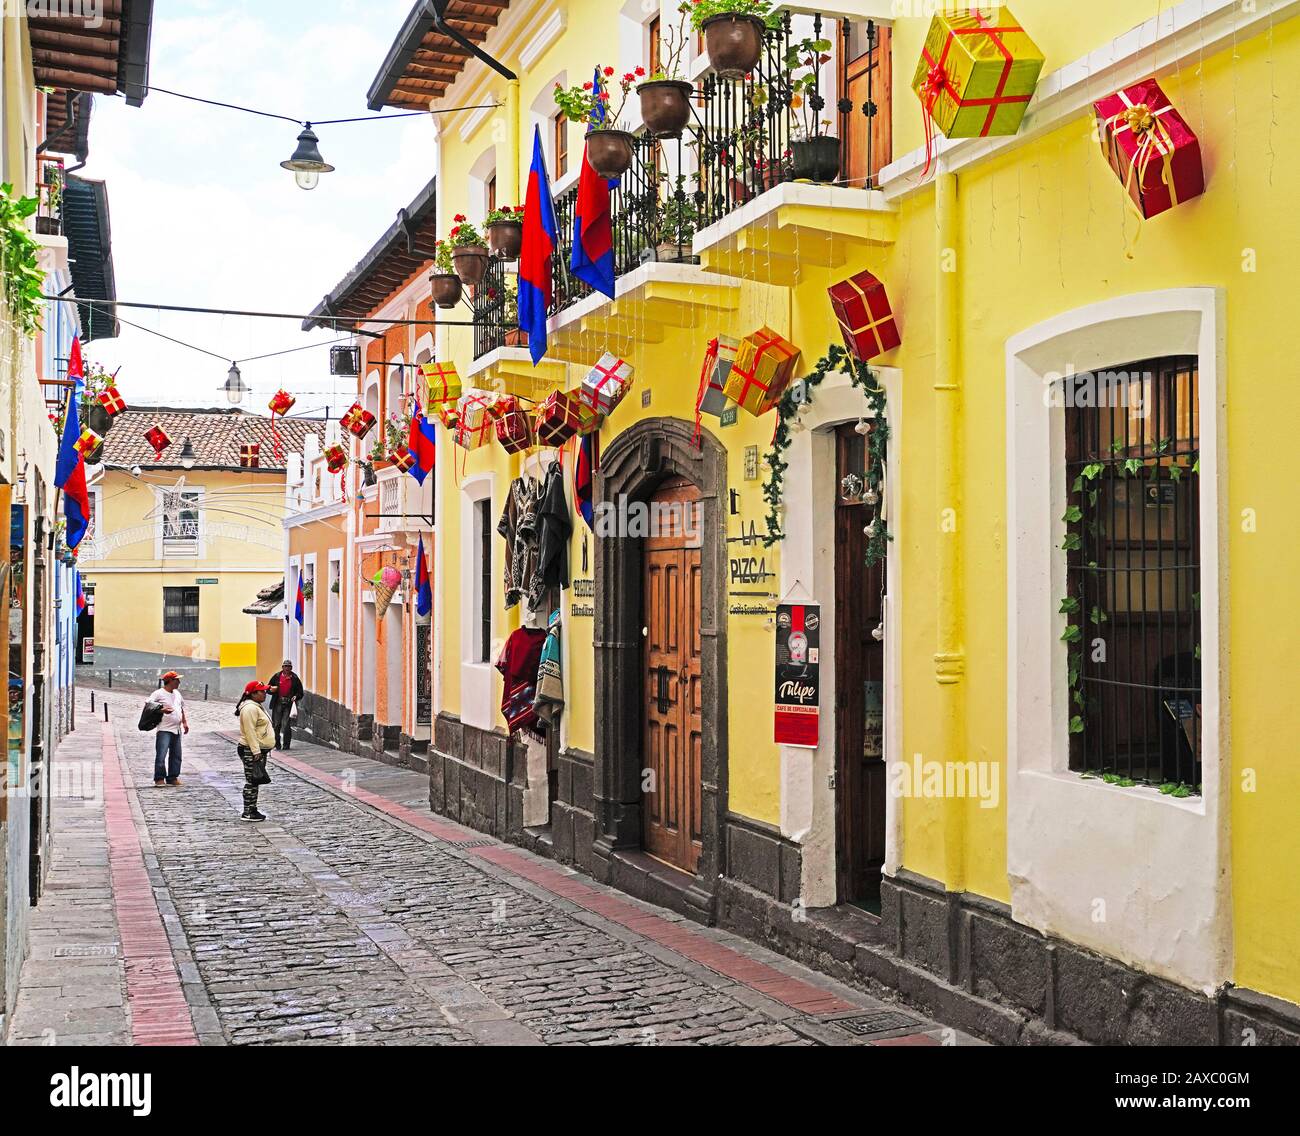 La Ronda calle de tiendas de artesanía, galerías y restaurantes populares entre los turistas en el casco antiguo de Quito, Ecuador. Foto de stock